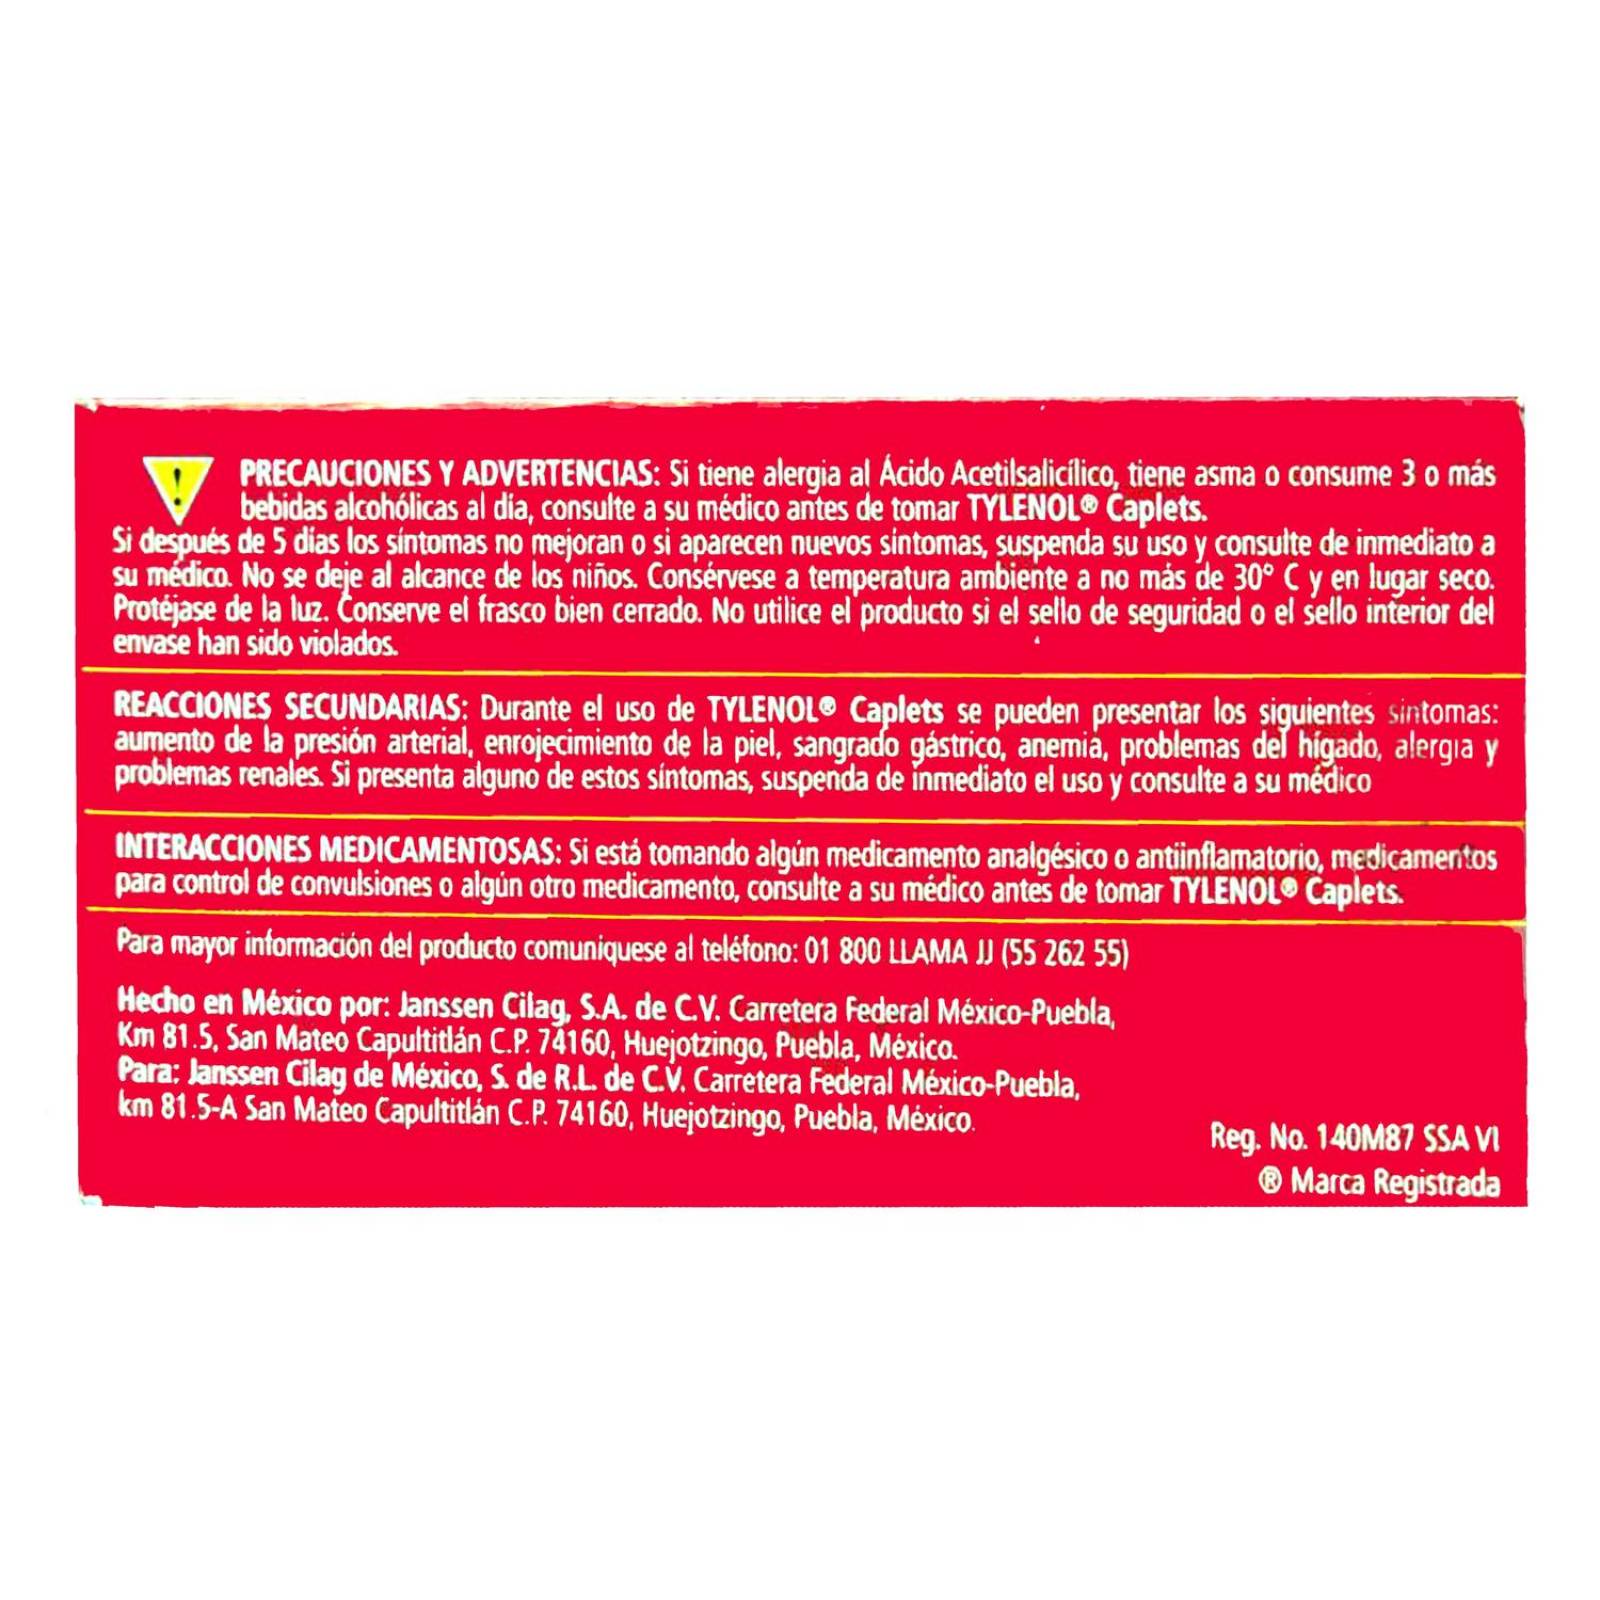 Tylenol 500 mg Caja Con 20 Tabletas 